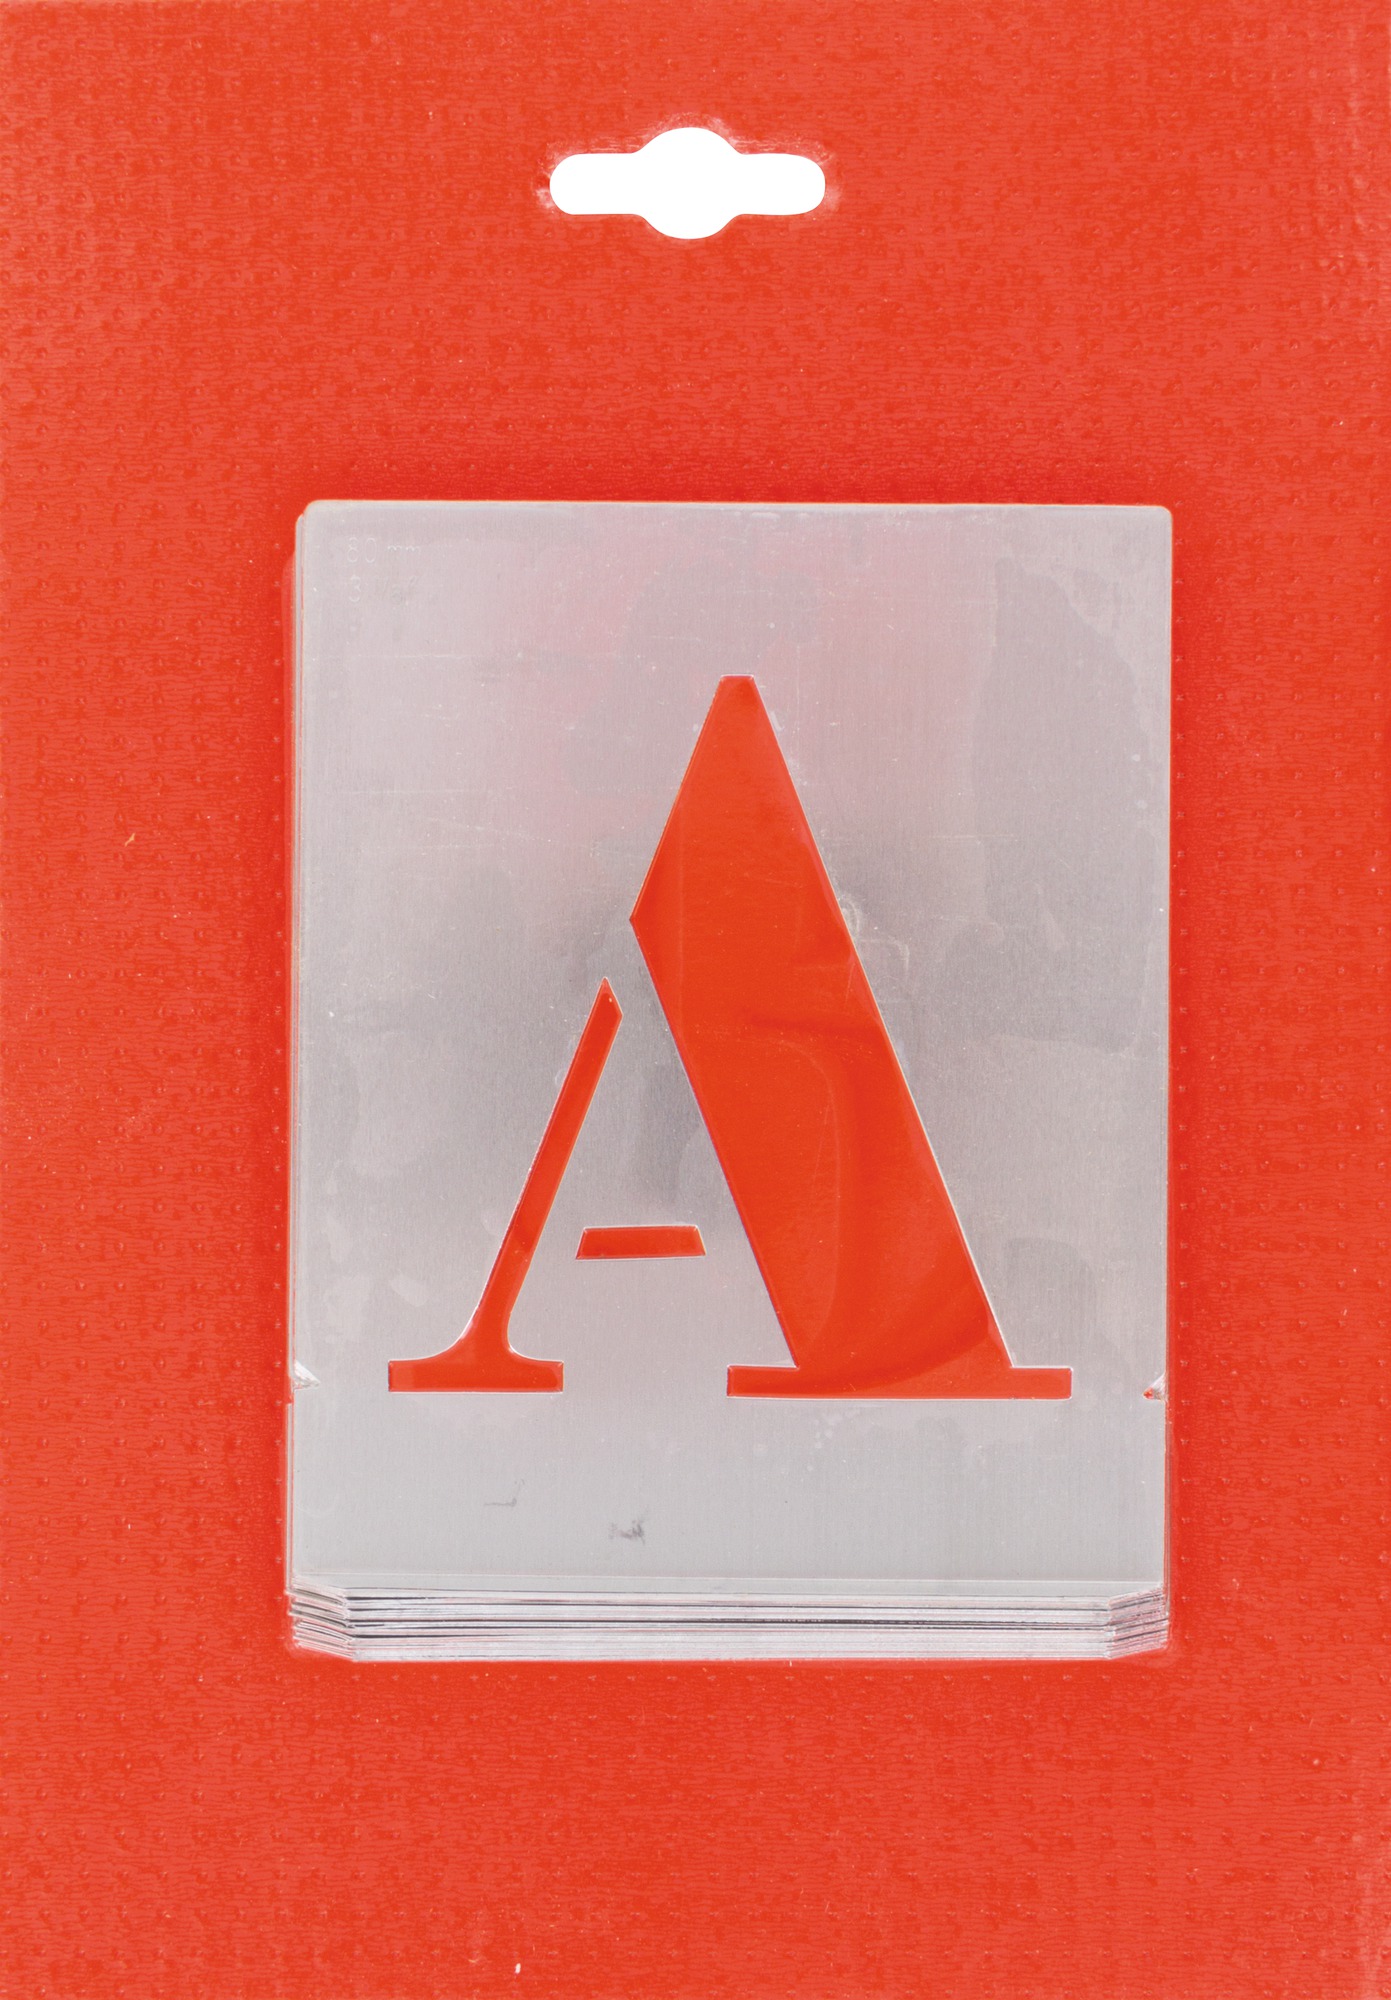 Jeu de lettres pochoirs alphabet aluminium ajouré Uny - Dimensions 80 mm